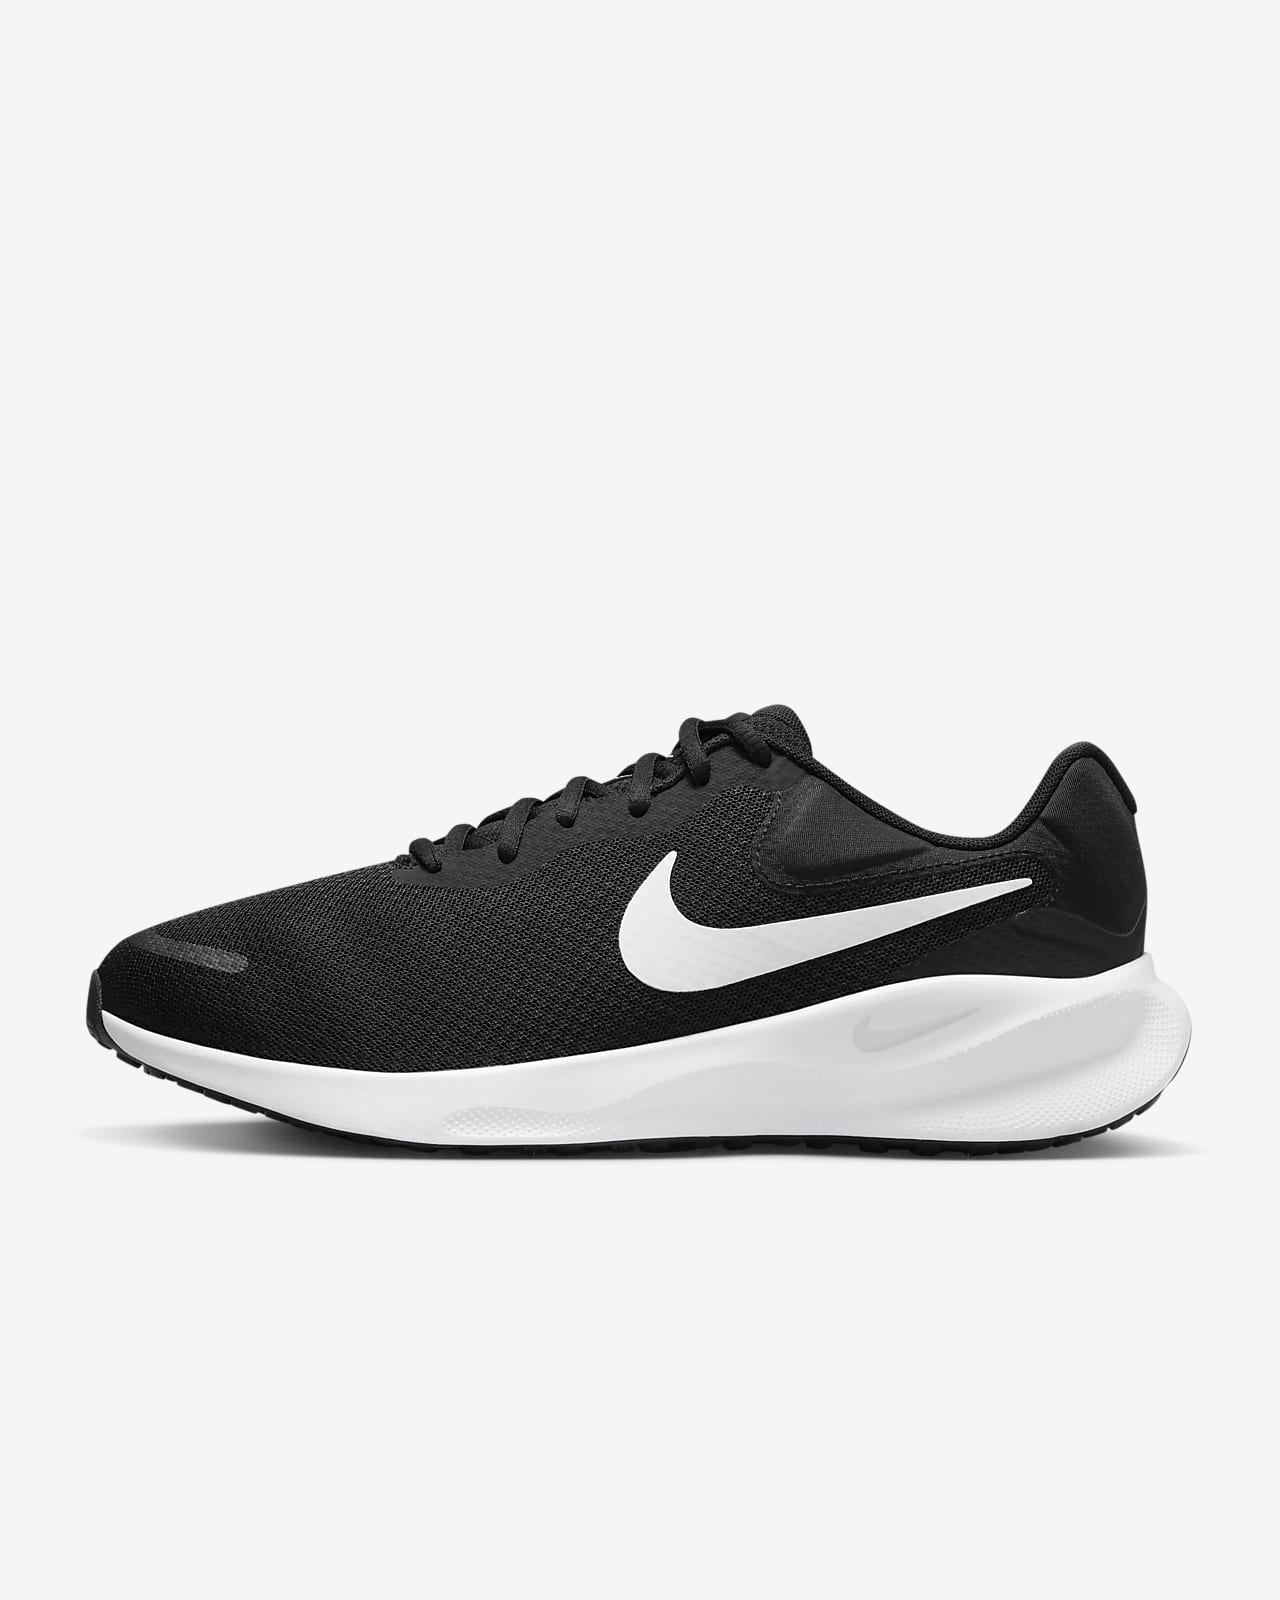 Ανδρικά παπούτσια για τρέξιμο σε δρόμο Nike Revolution 7 (πολύ φαρδιά)